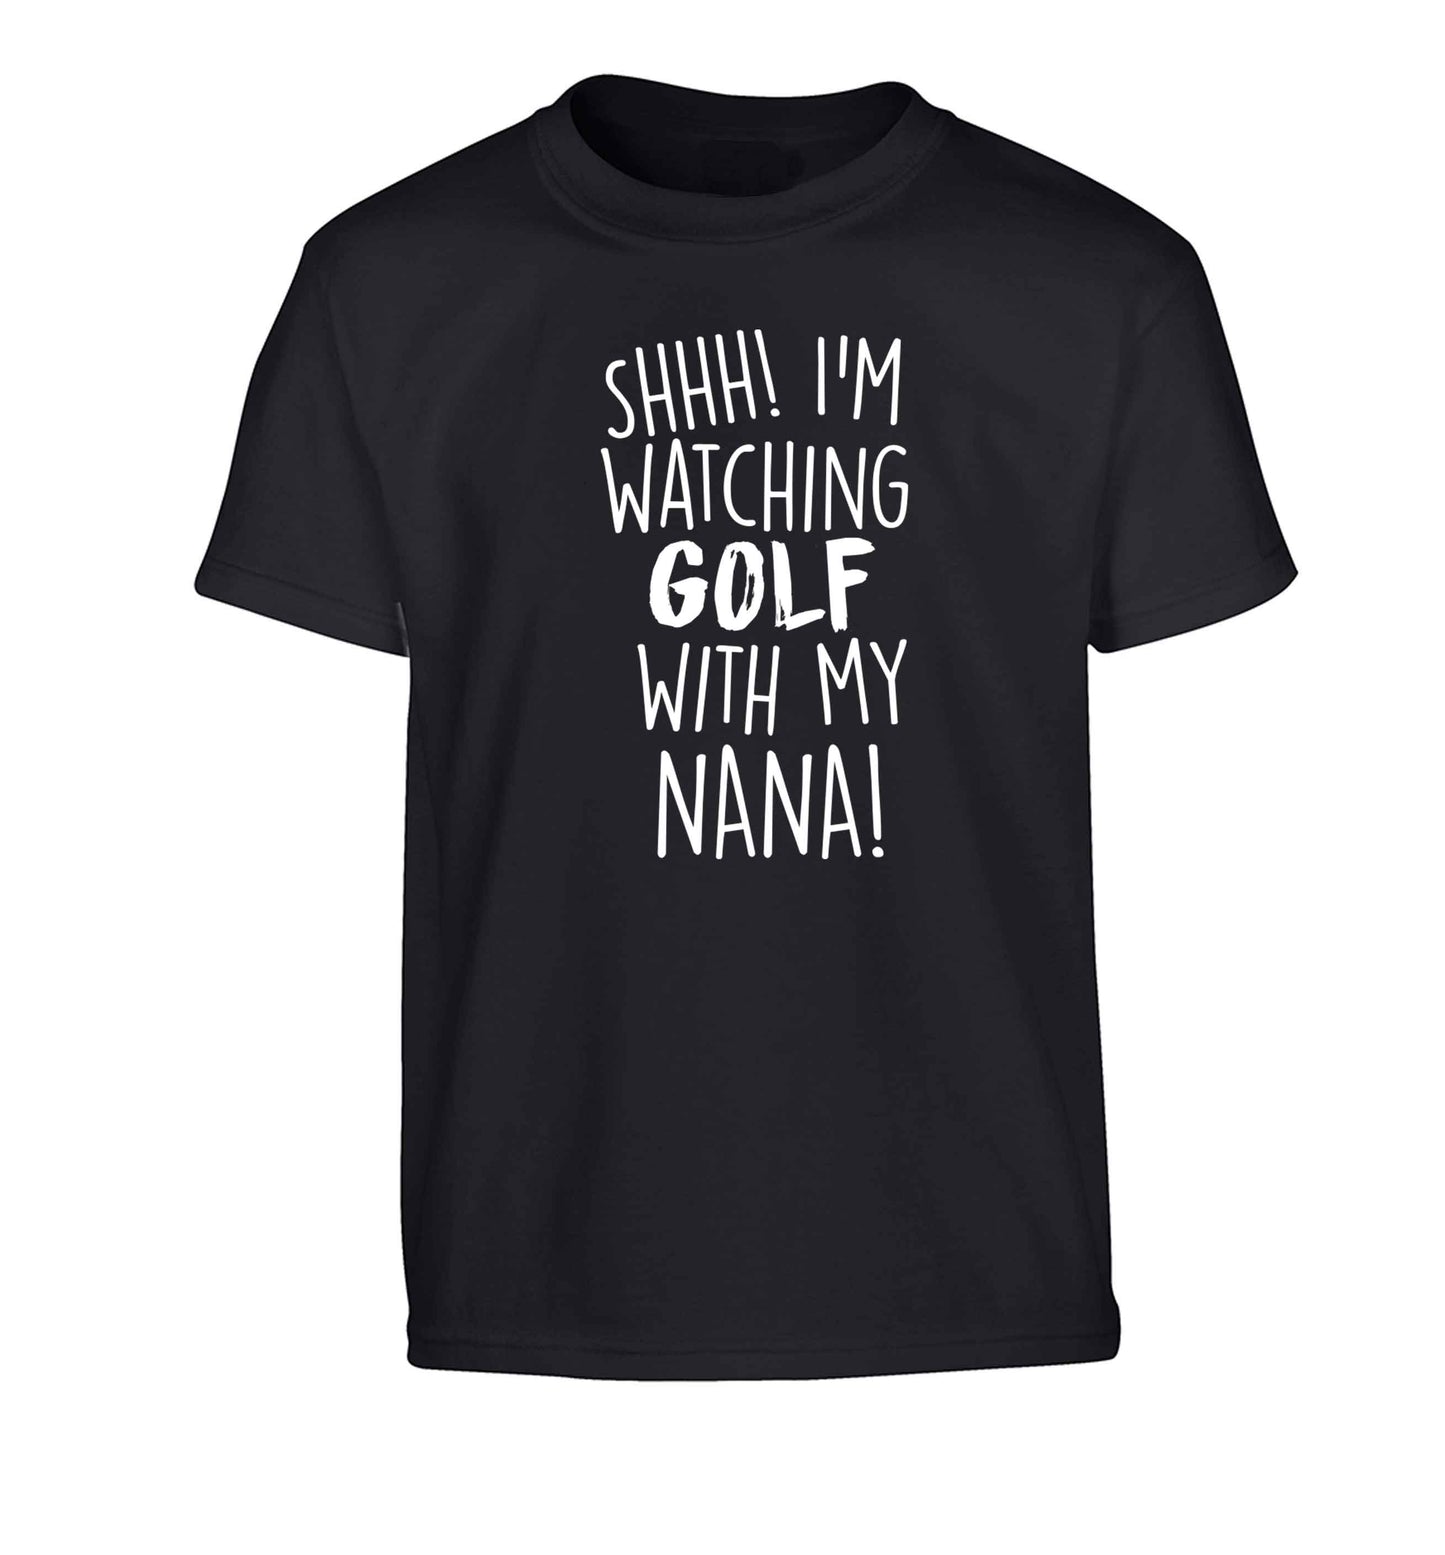 Shh I'm watching golf with my nana Children's black Tshirt 12-13 Years